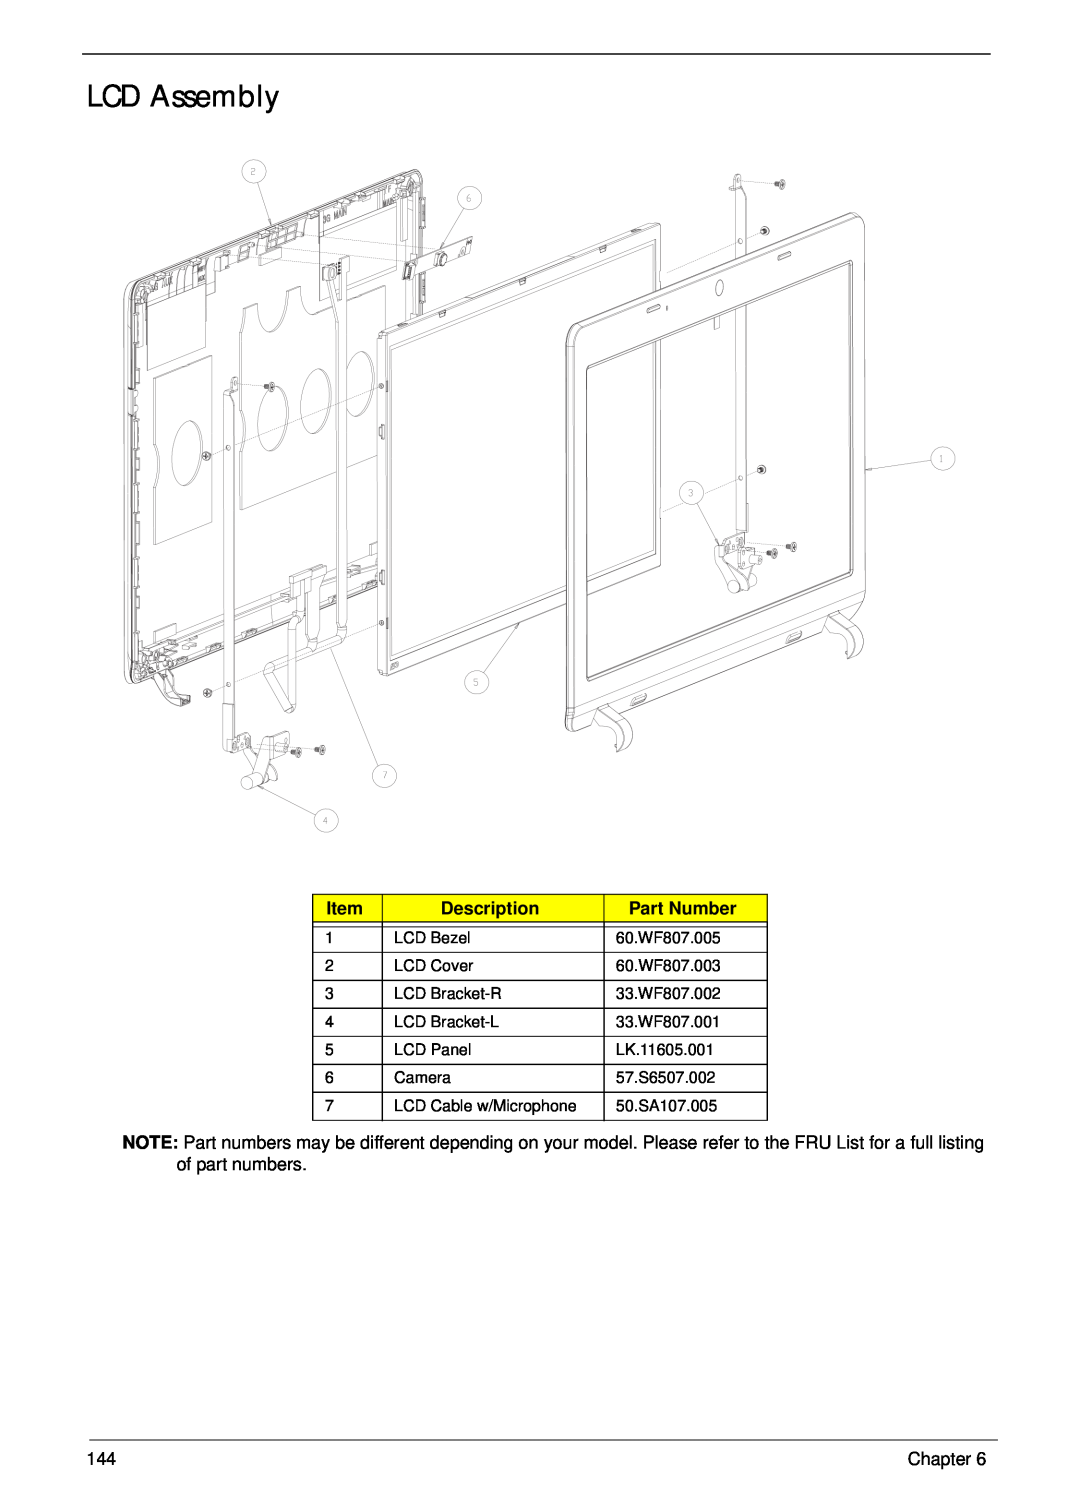 Gateway EC14 manual LCD Assembly, Description, Part Number 